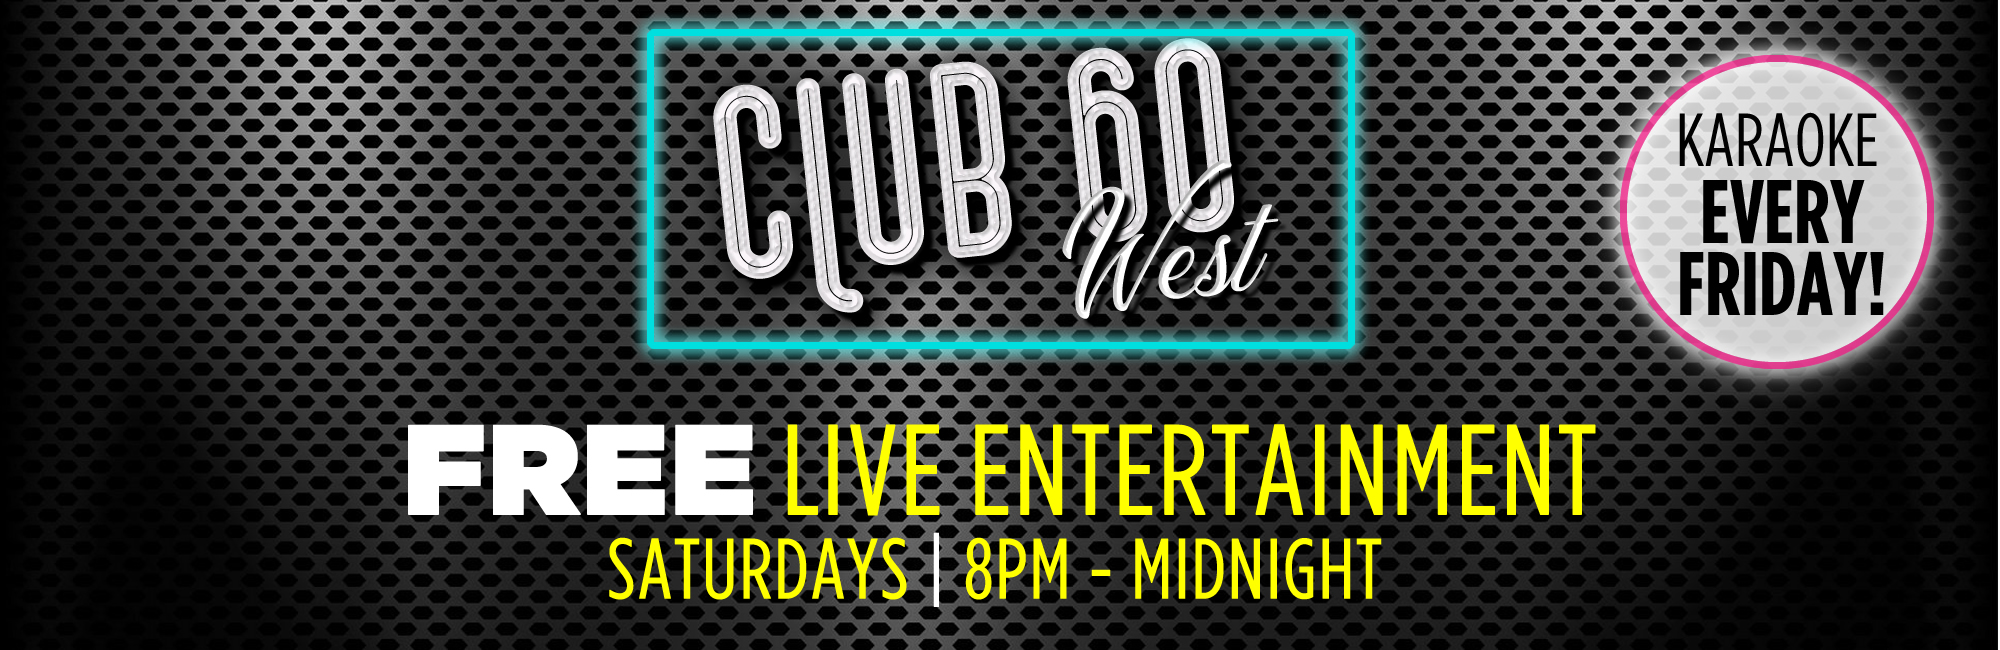 Club 60 West Saturdays